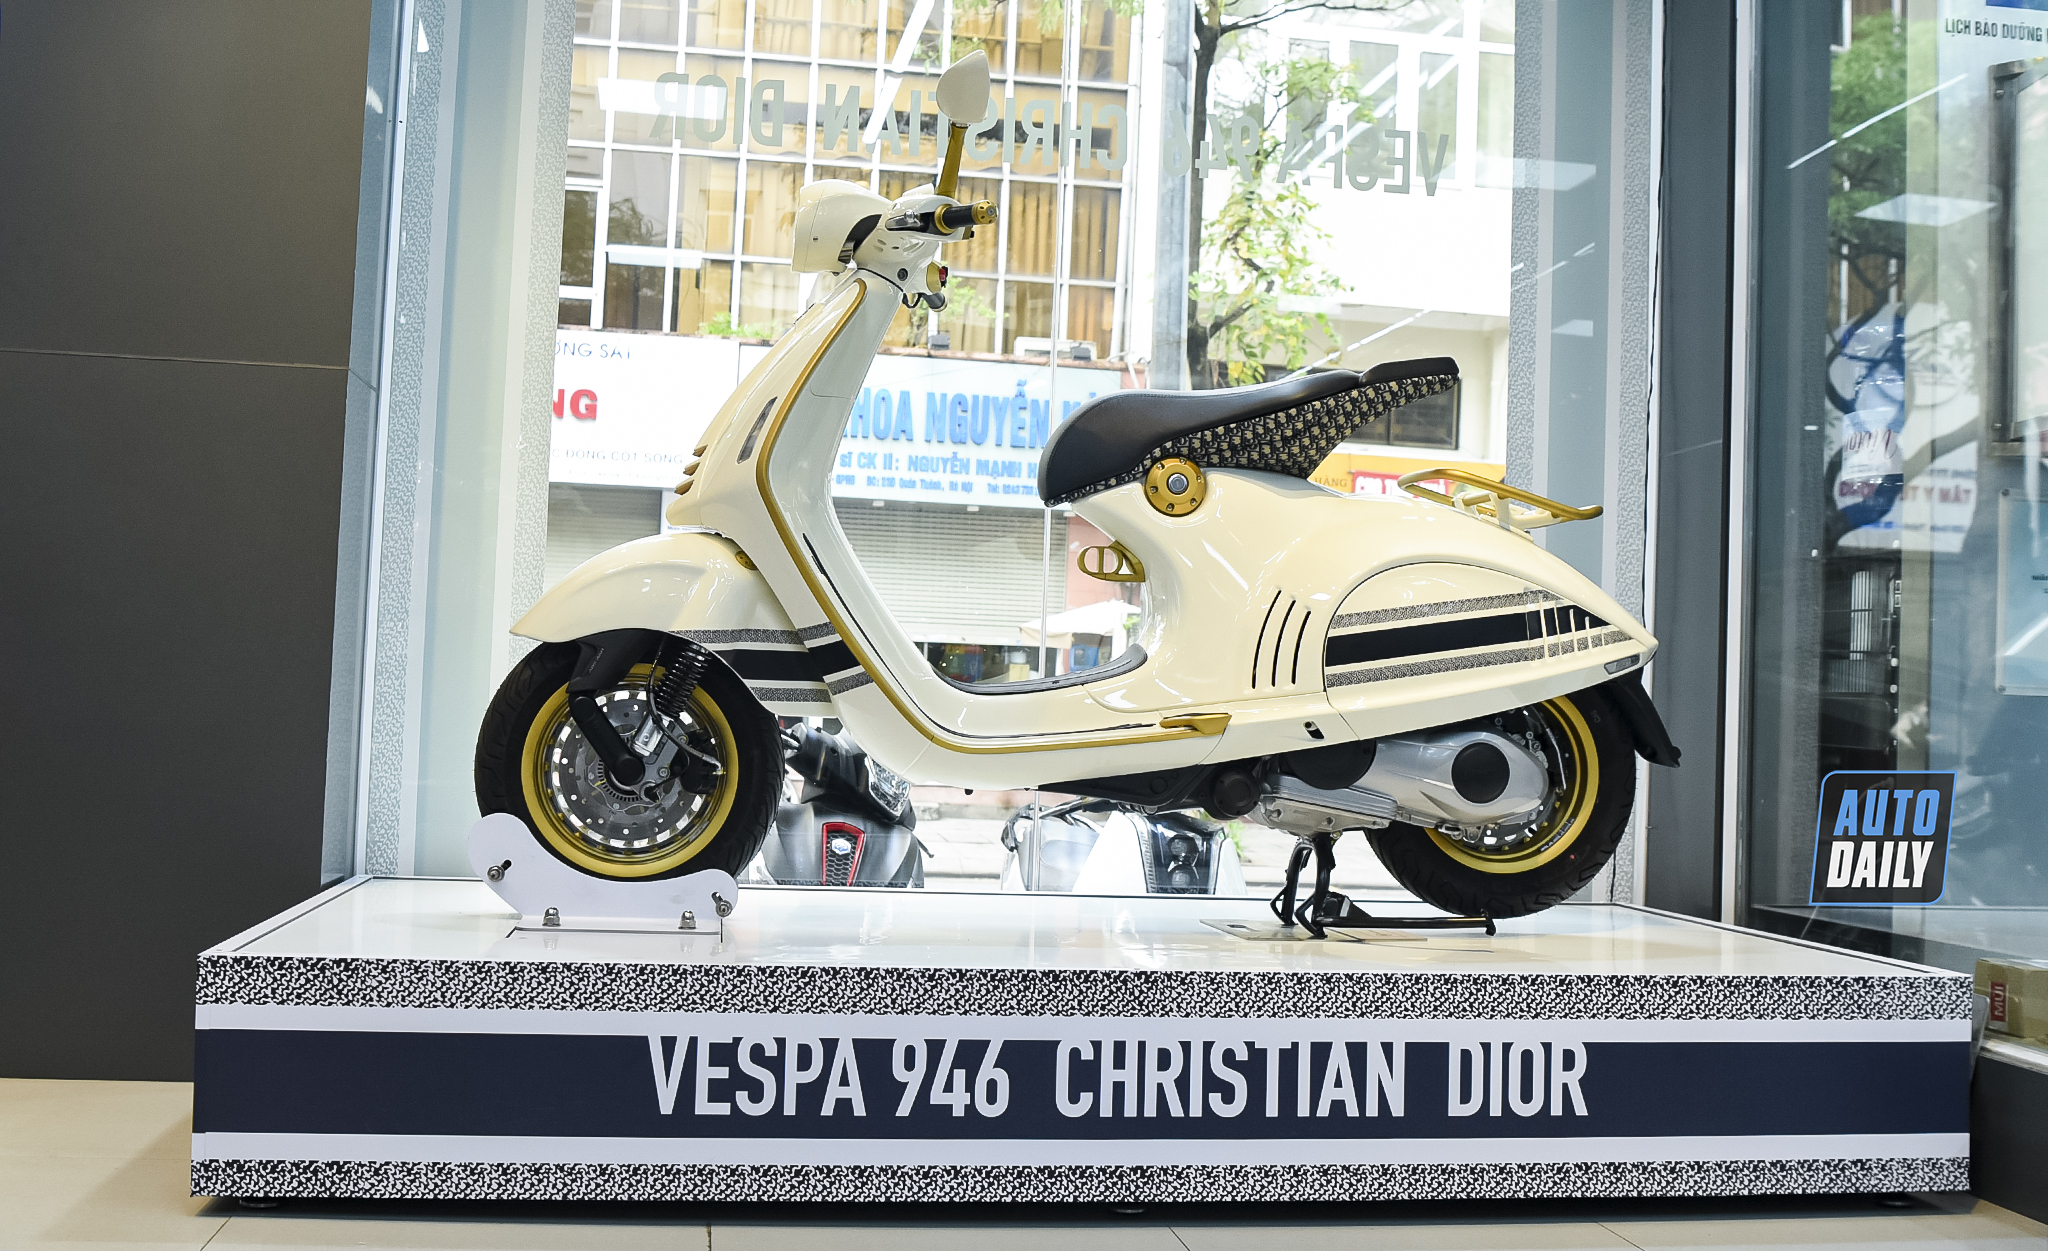 Bạn gái nhà người ta tặng bạn trai Vespa 946 Christian Dior hơn 1 tỷ đồng   CafeAutoVn